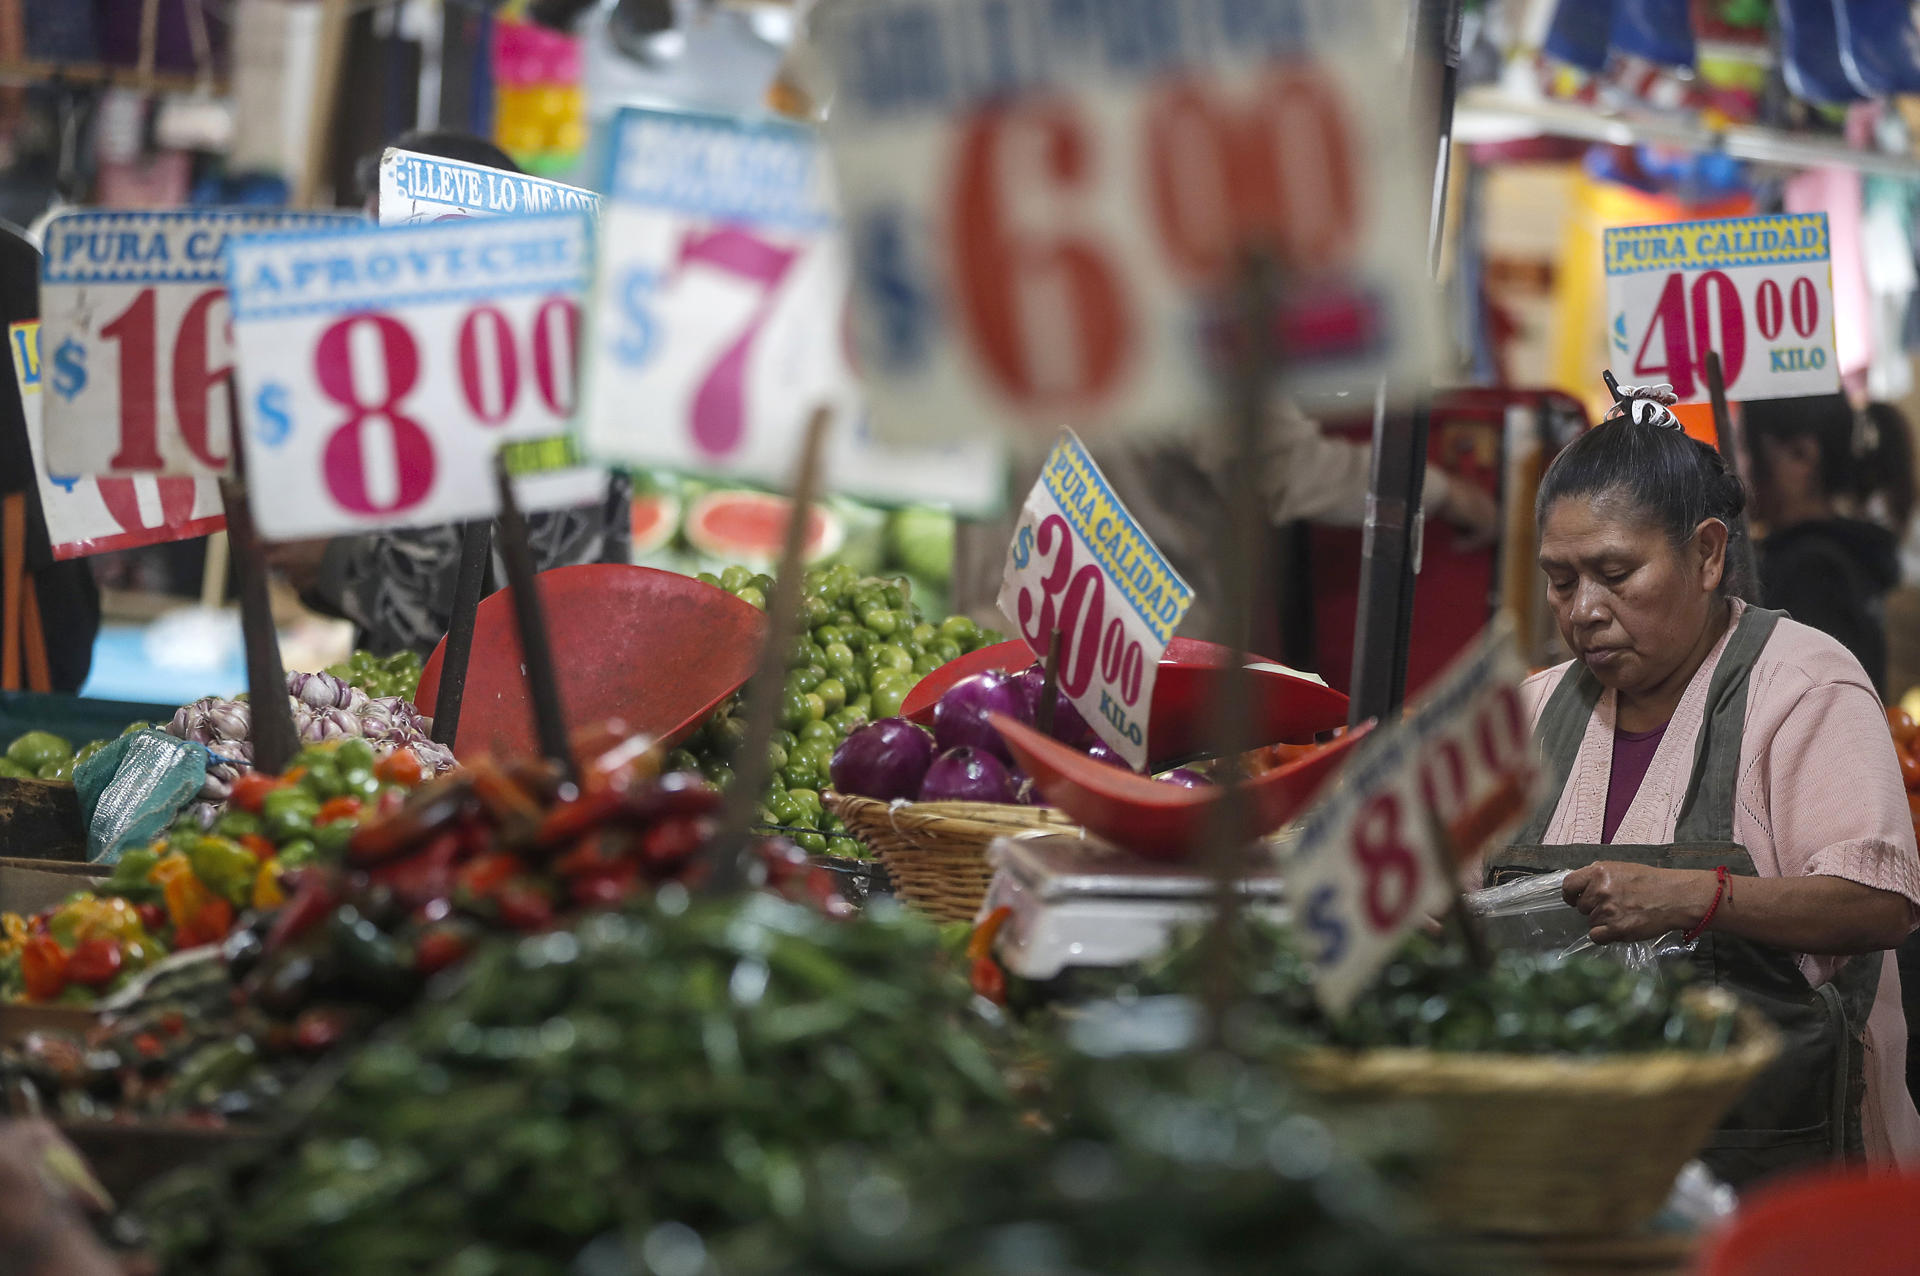 Una persona ofrece sus productos en el mercado de Jamaica de la Ciudad de México (México). Imagen de archivo. EFE/Isaac Esquivel